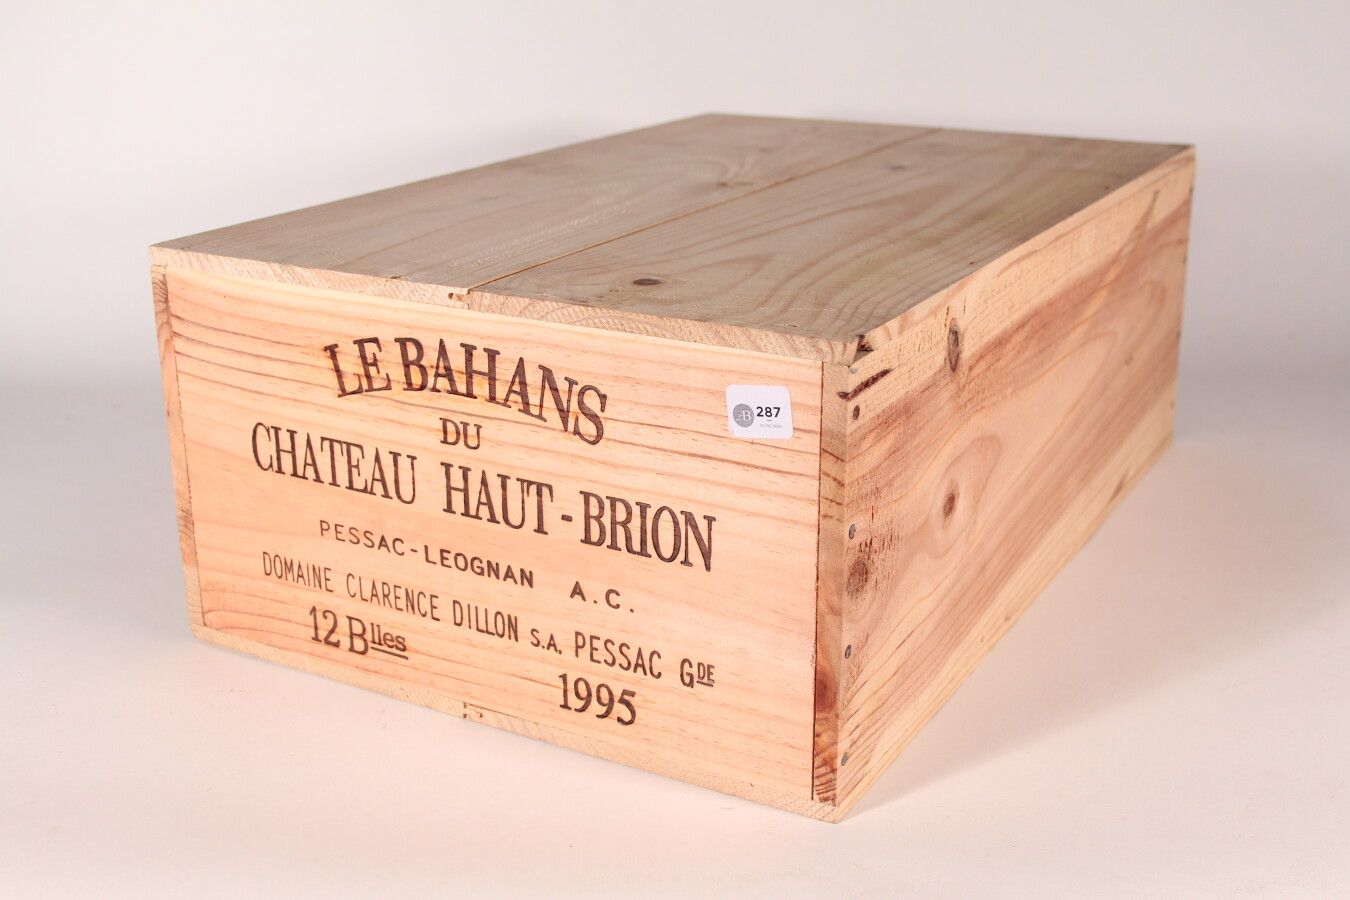 Null 1995 - Bahans Haut Brion

Pessac-Léognan Rosso - 12 bottiglie